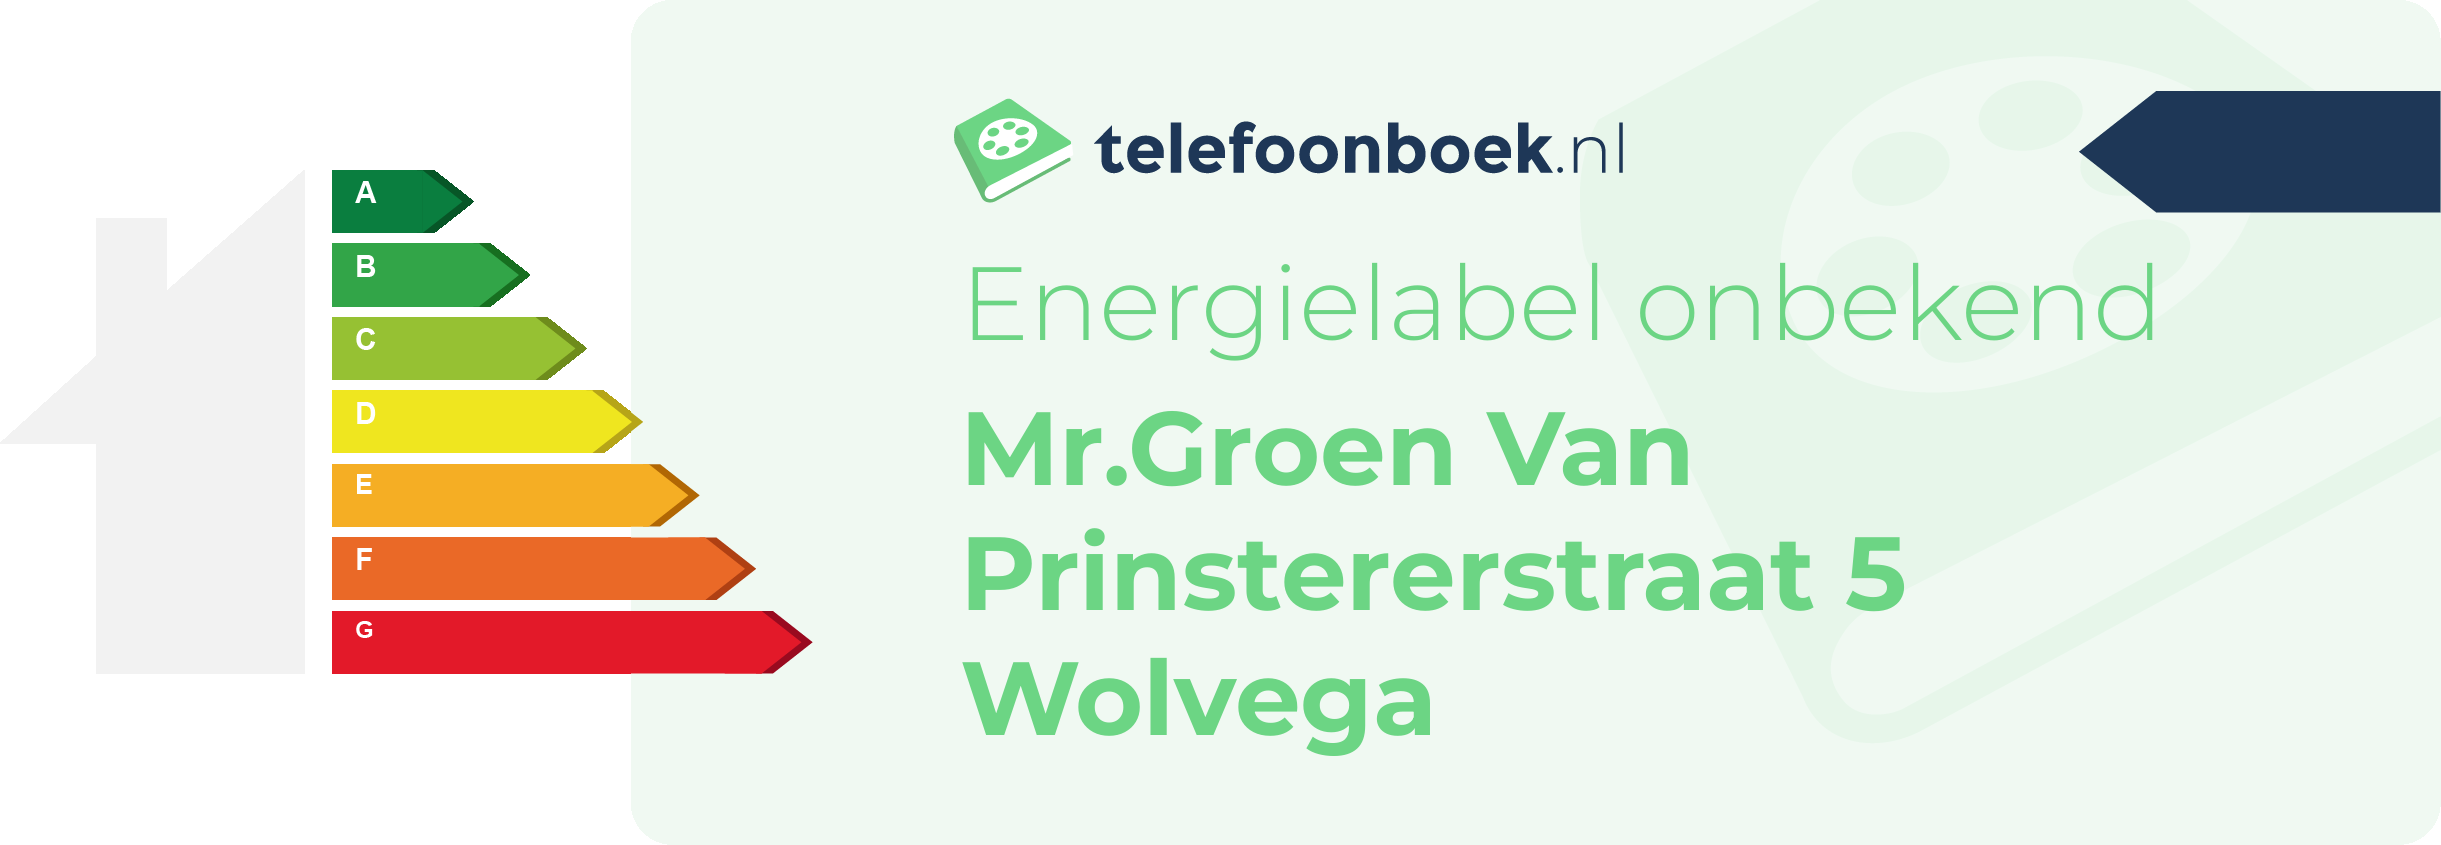 Energielabel Mr.Groen Van Prinstererstraat 5 Wolvega